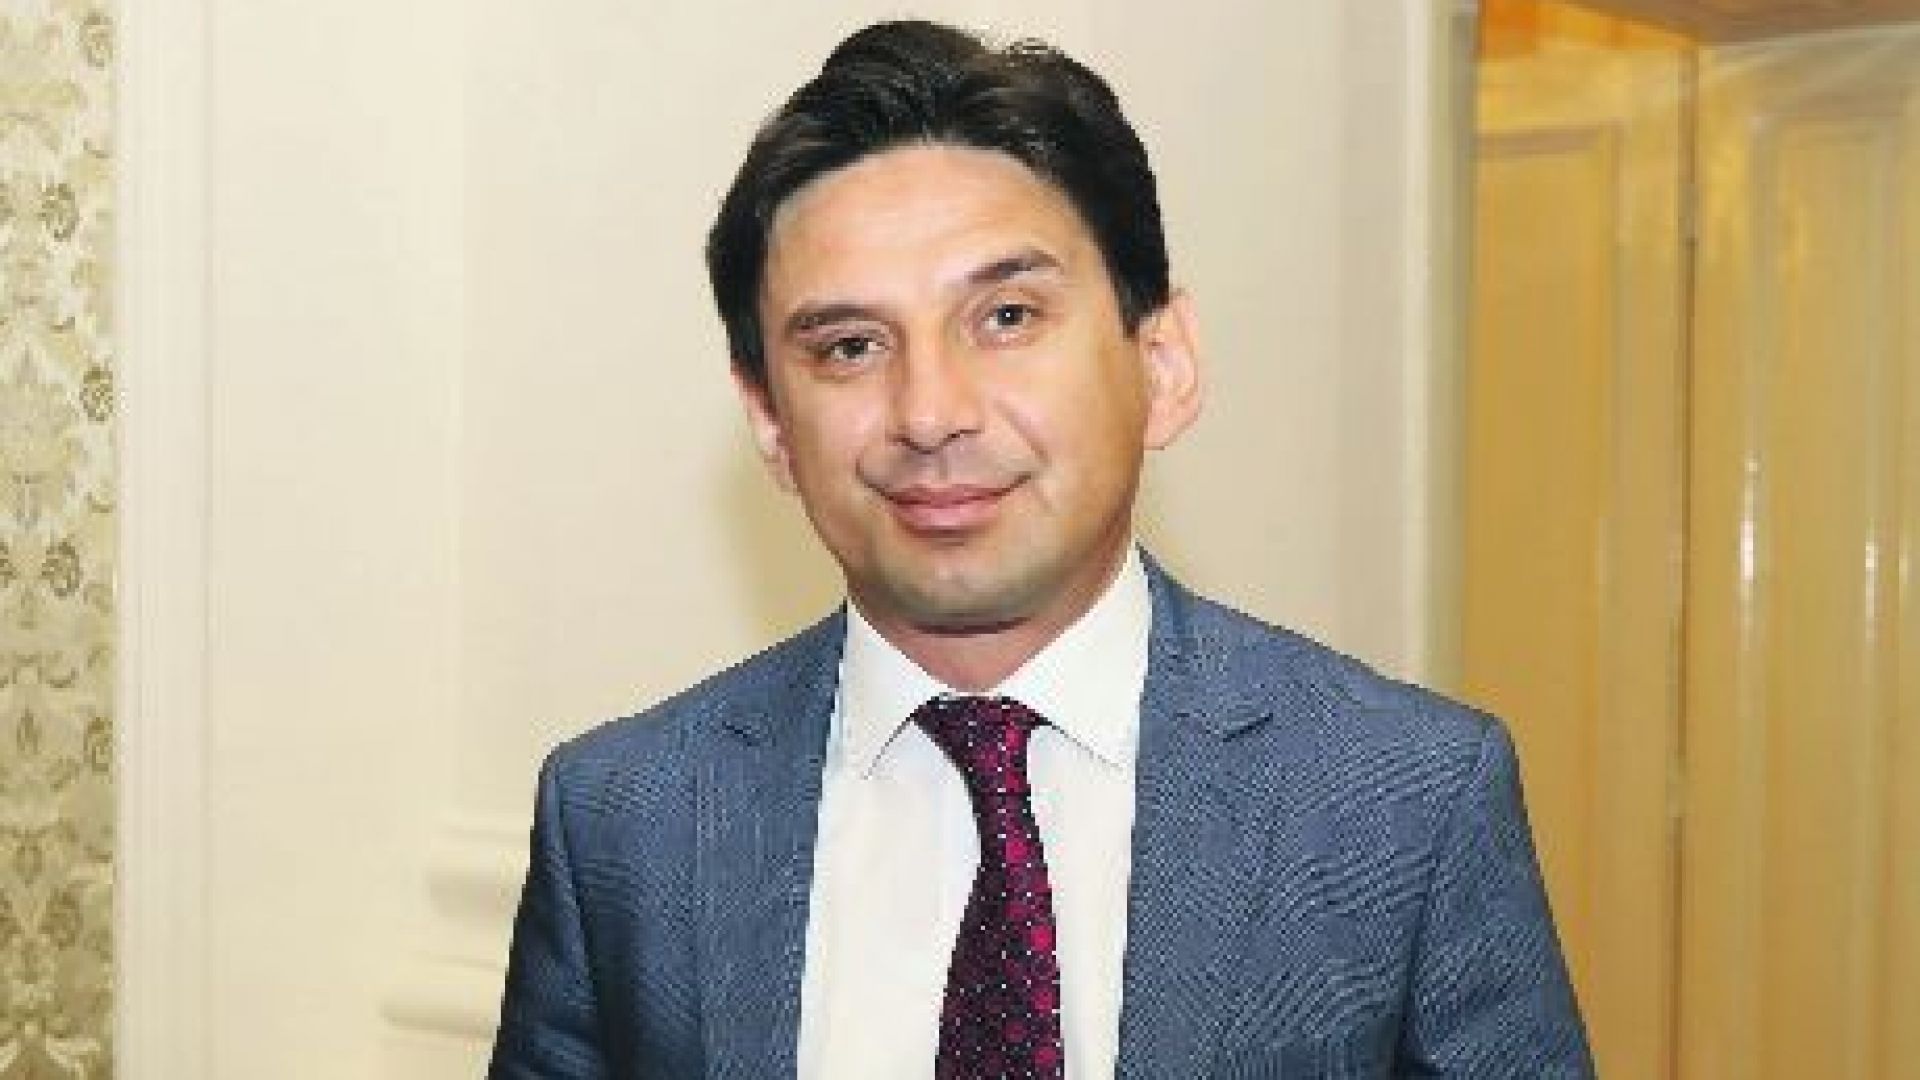 Халил Летифов: Възможно е ДПС да има собствена кандидатура за президент